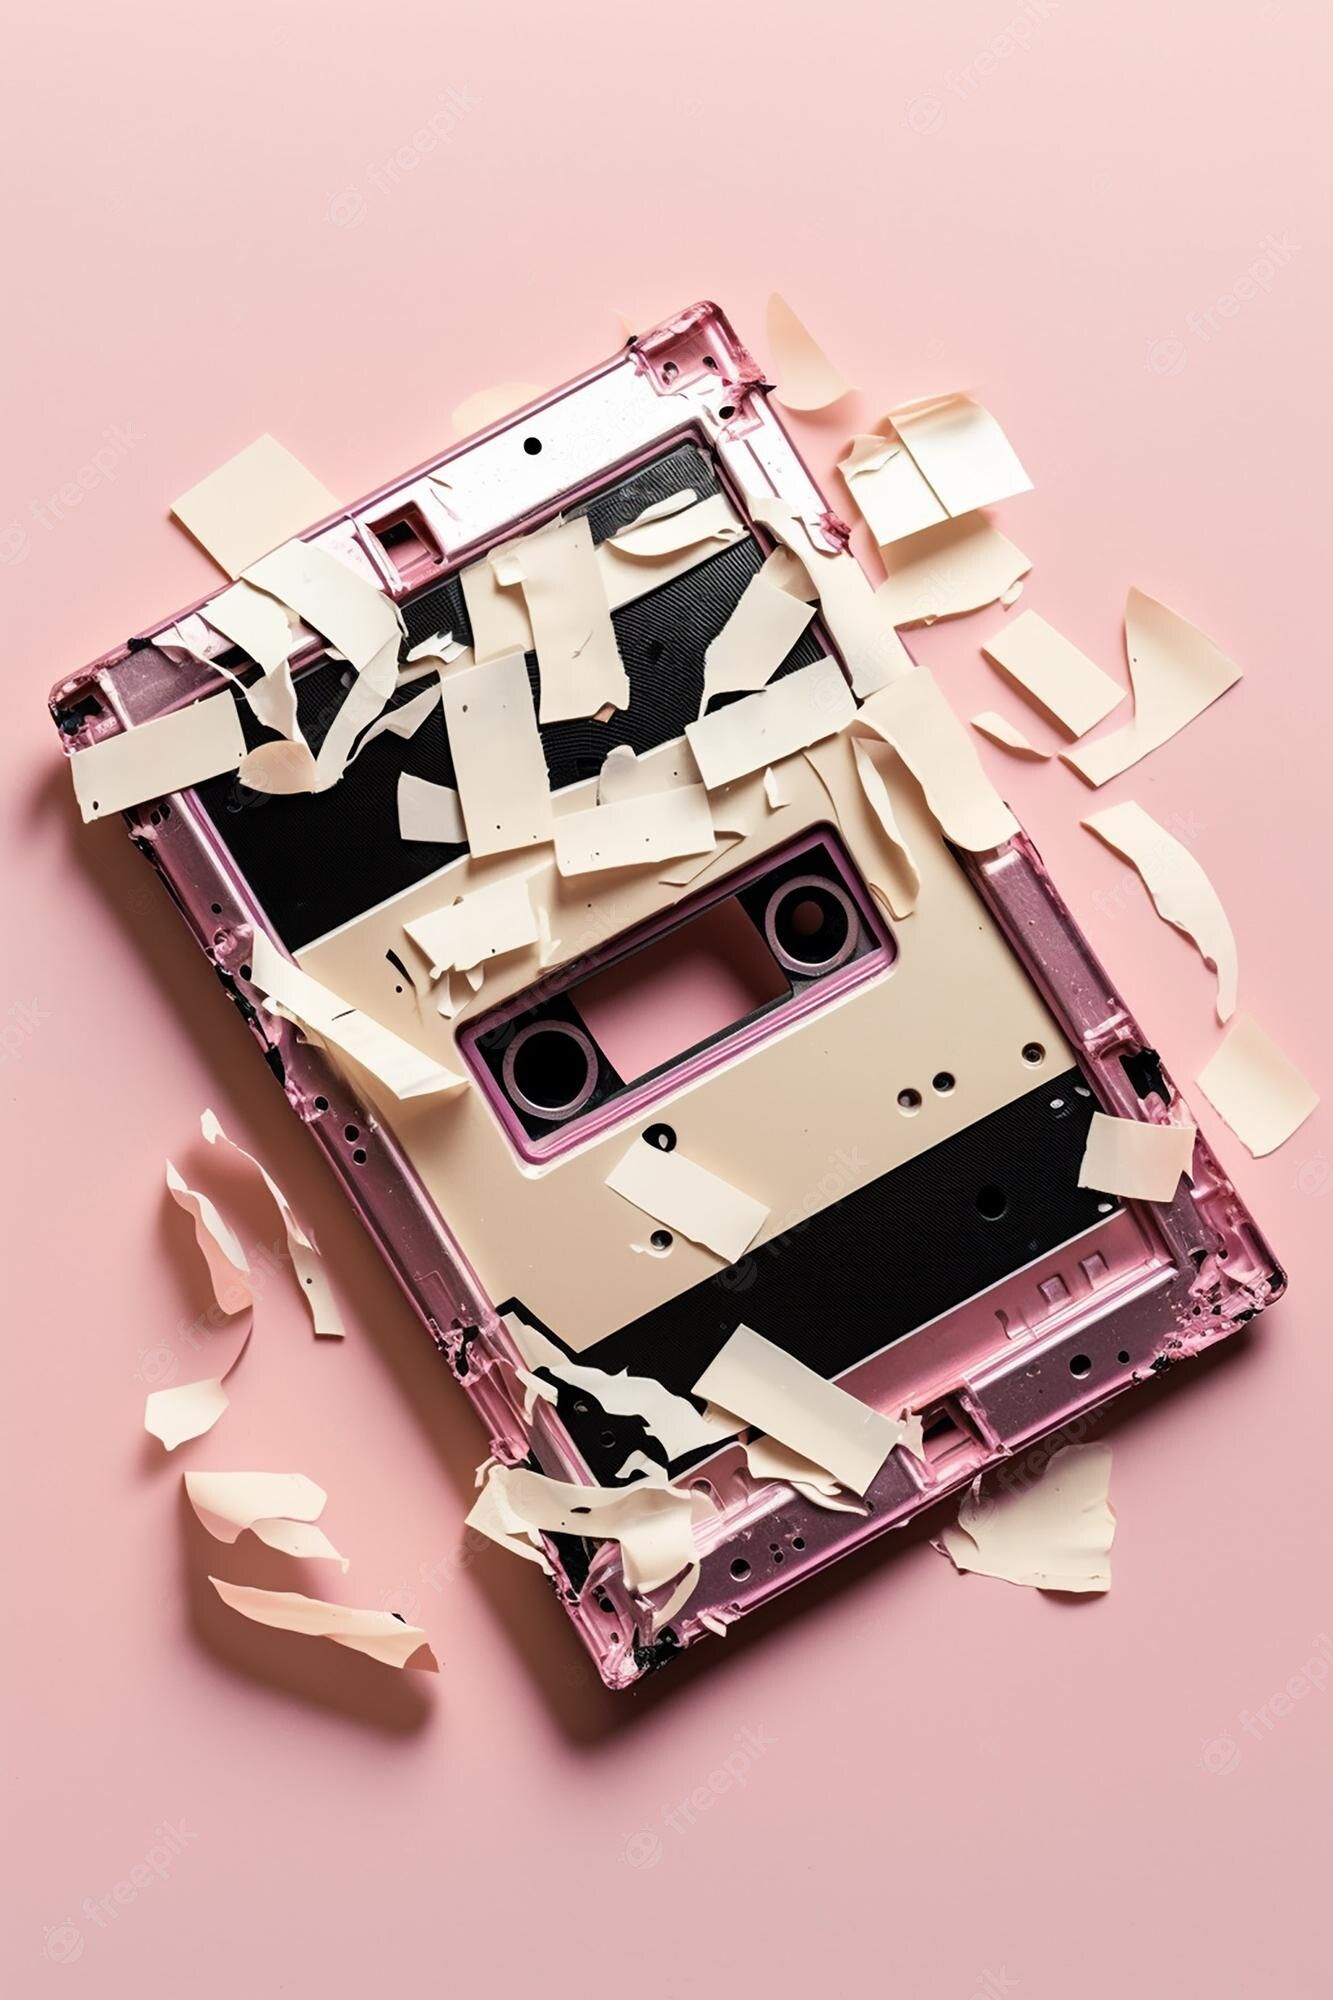  Kaputte Hintergrundbild 1333x2000. Eine kaputte kassette, die kaputt ist und von der firma pink tape stammt